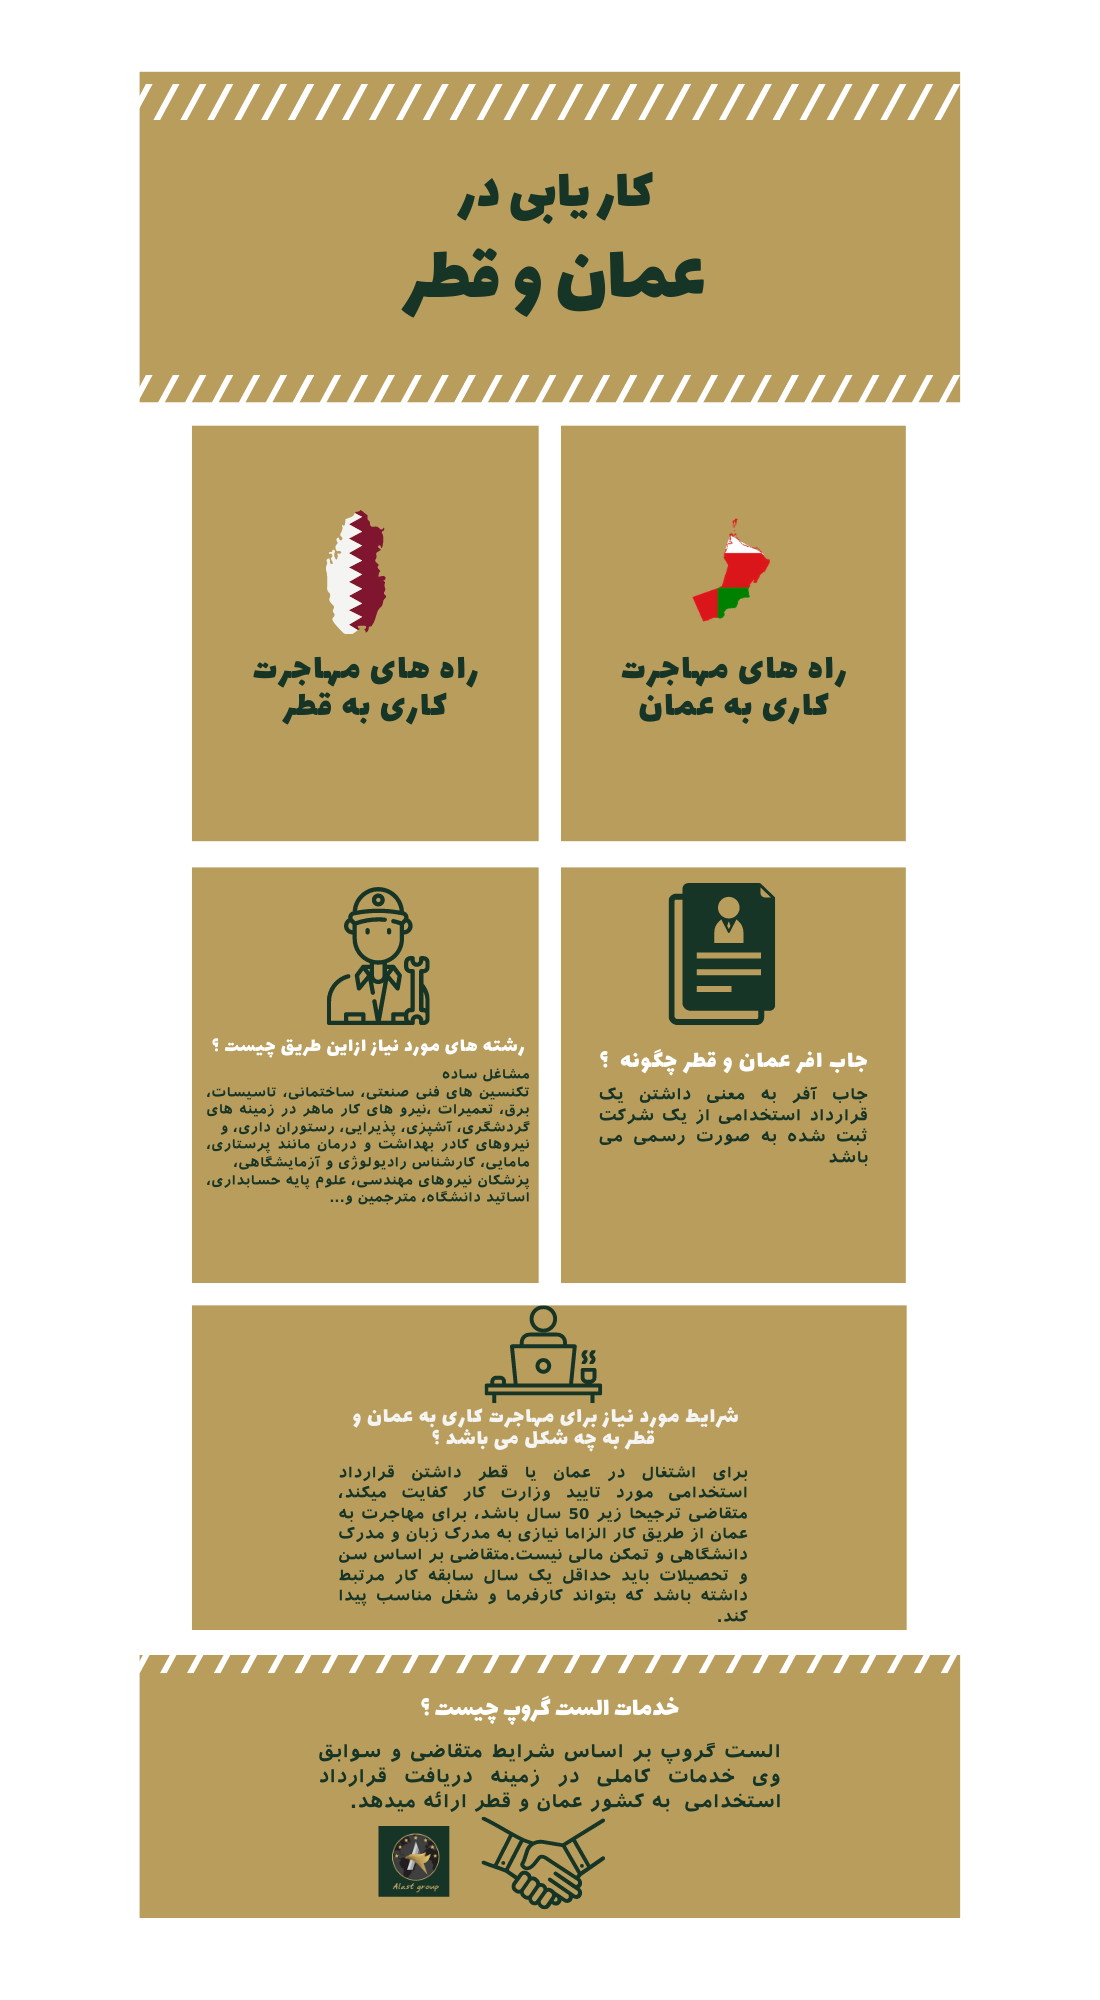 اینفوگرافیک کاریابی در عمان و قطر